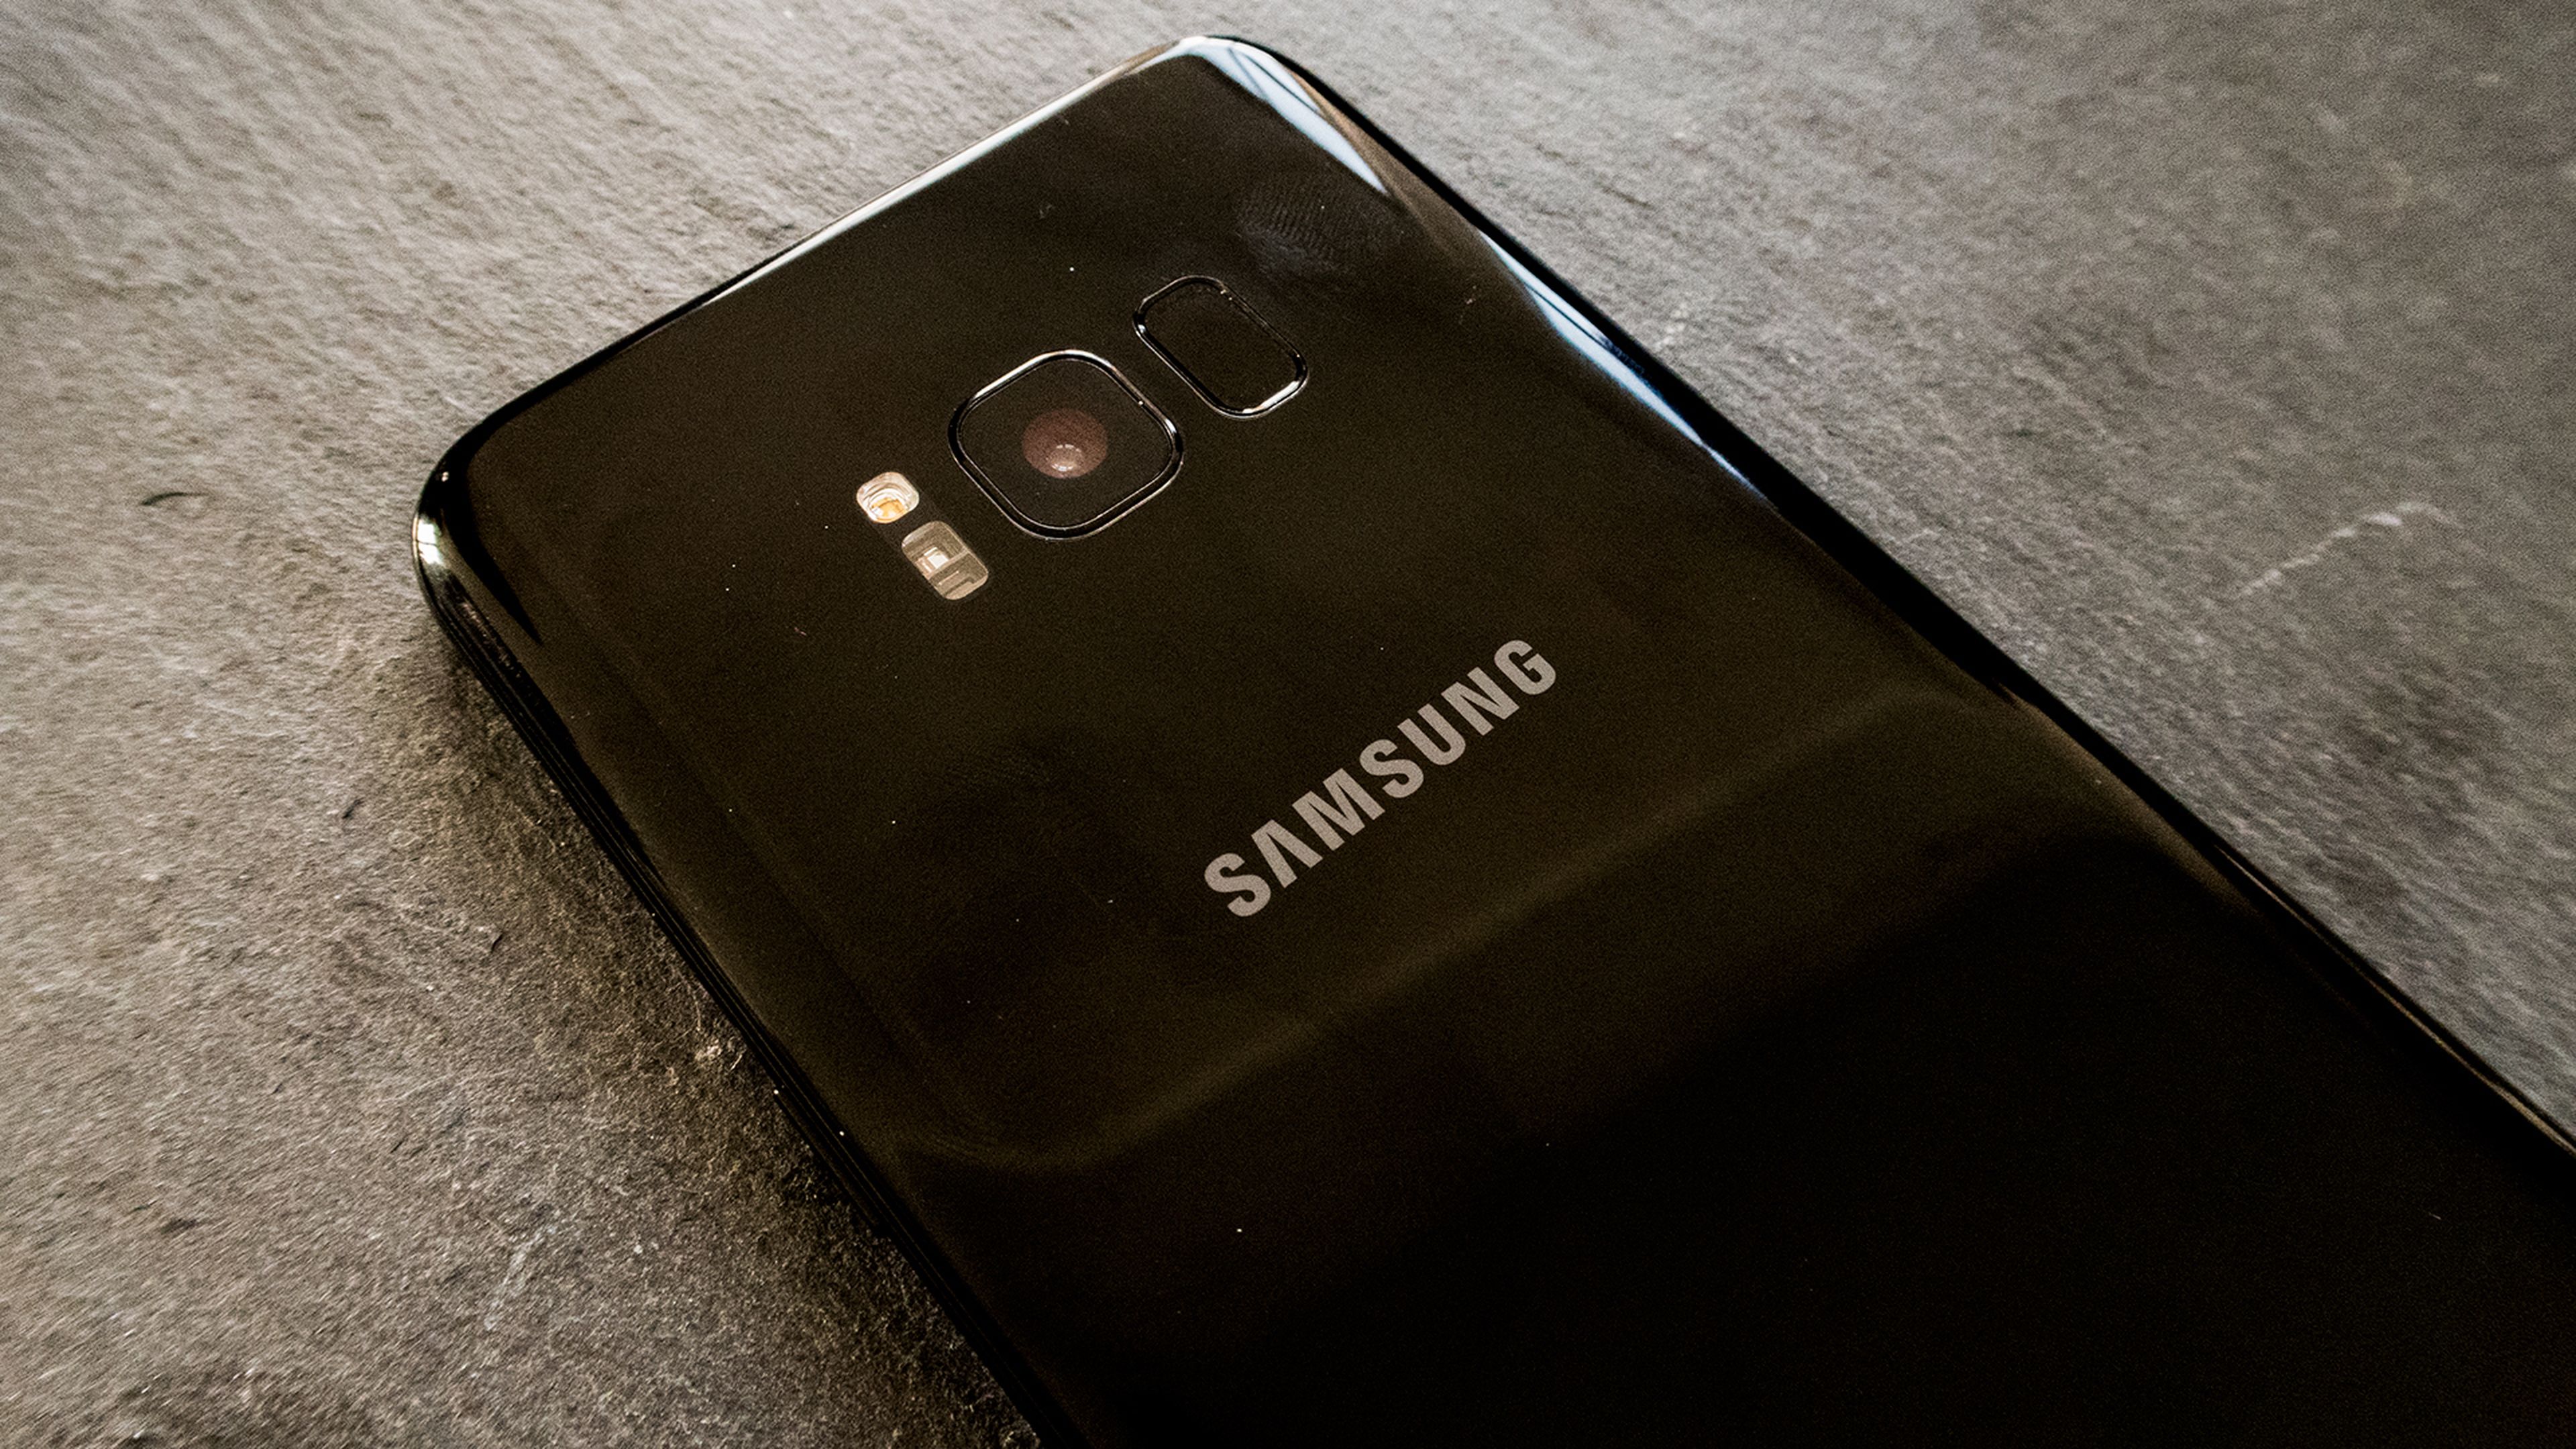 Galería de imágenes del Samsung Galaxy S8 y S8+ - 2